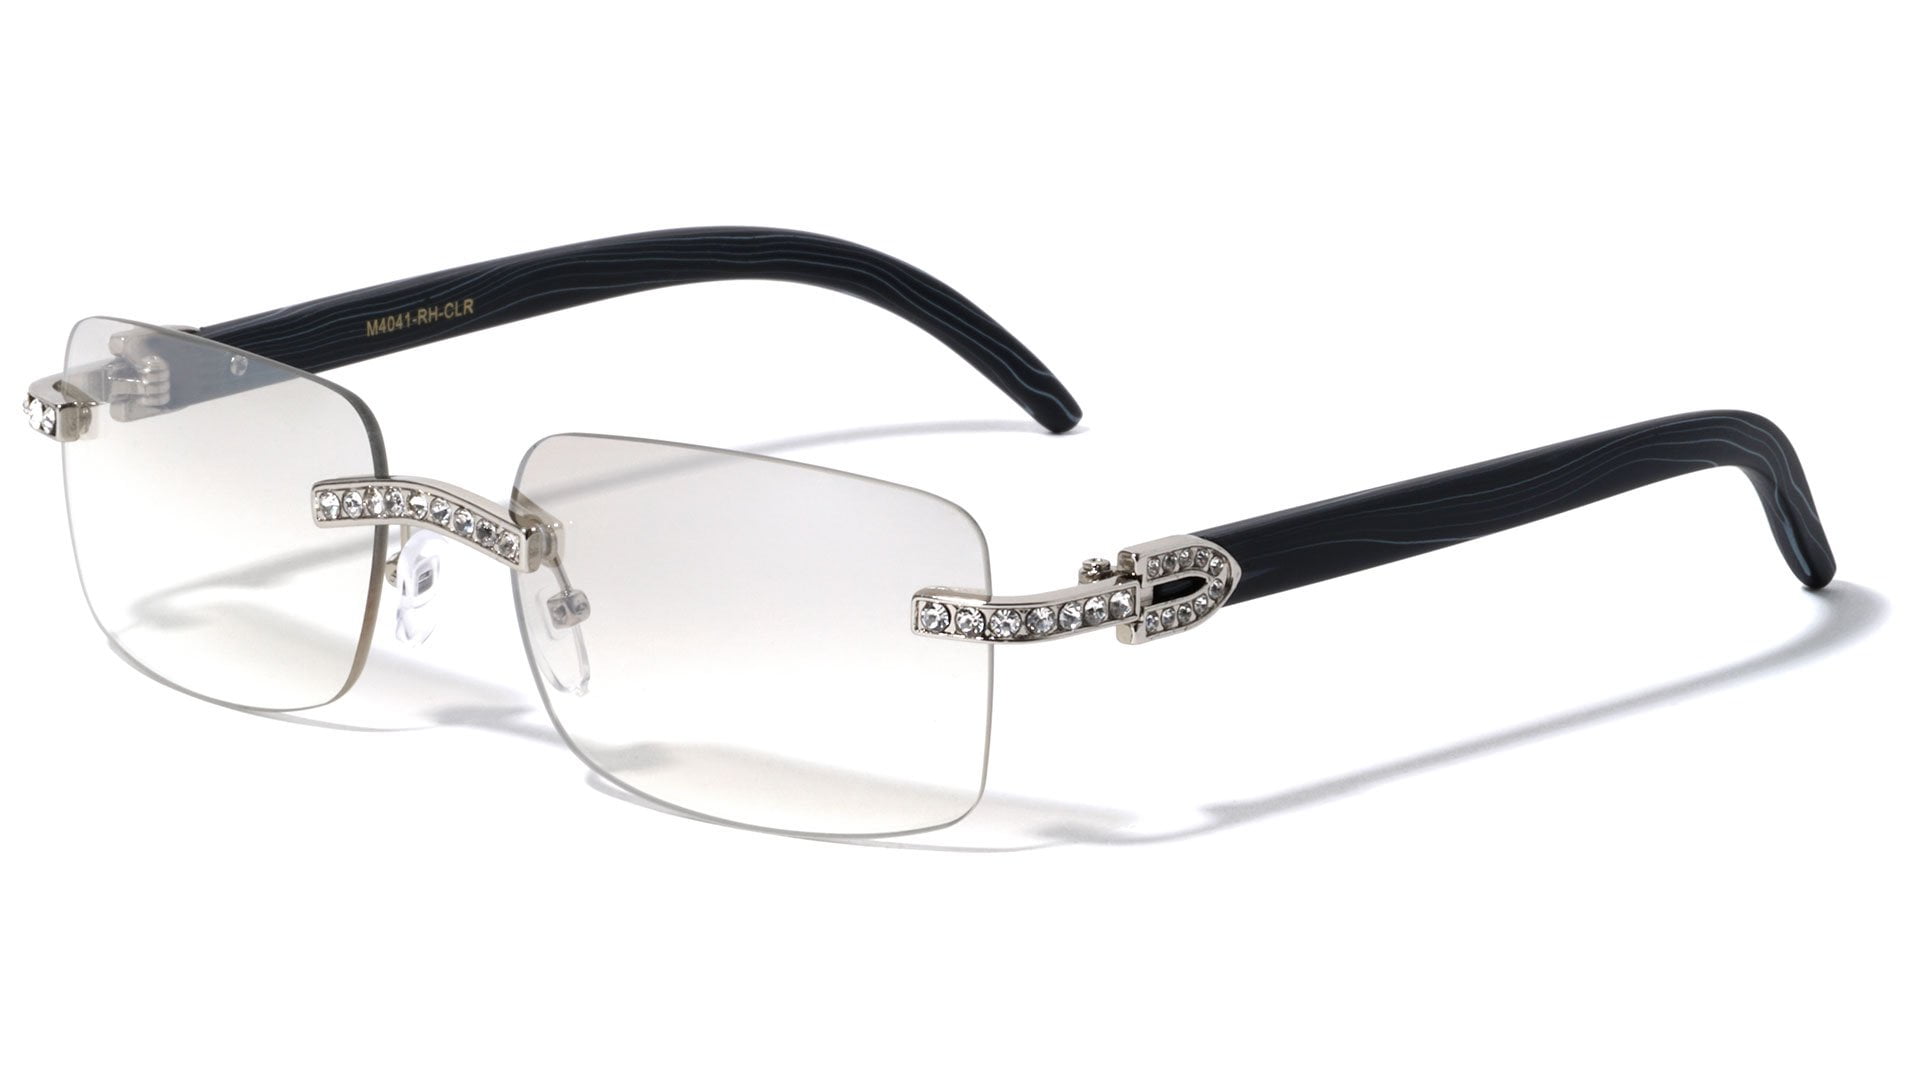 Case Glasses Frame for Men Metal Half Frame Rectangular Clear Lens Non-prescription